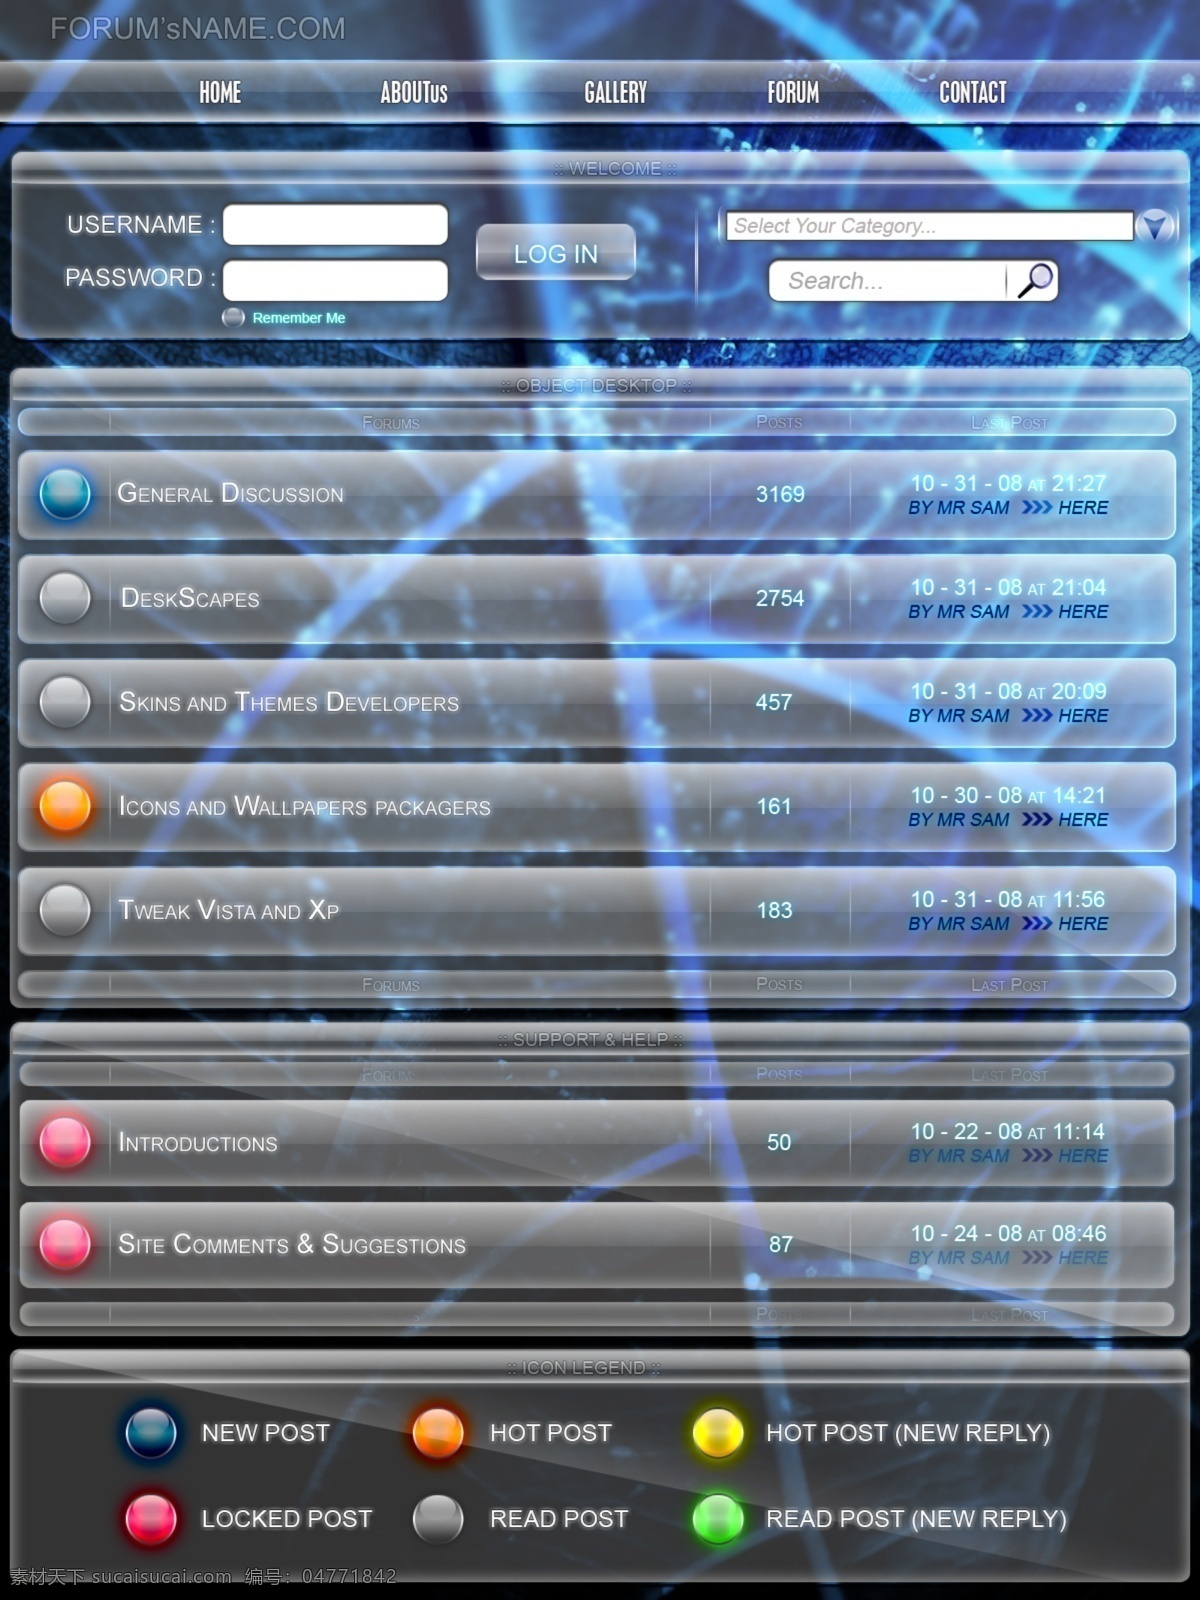 蓝色 水晶 质感 网页 论坛 模板 欧美模板 水晶质感 网页模板 源文件库 网页素材